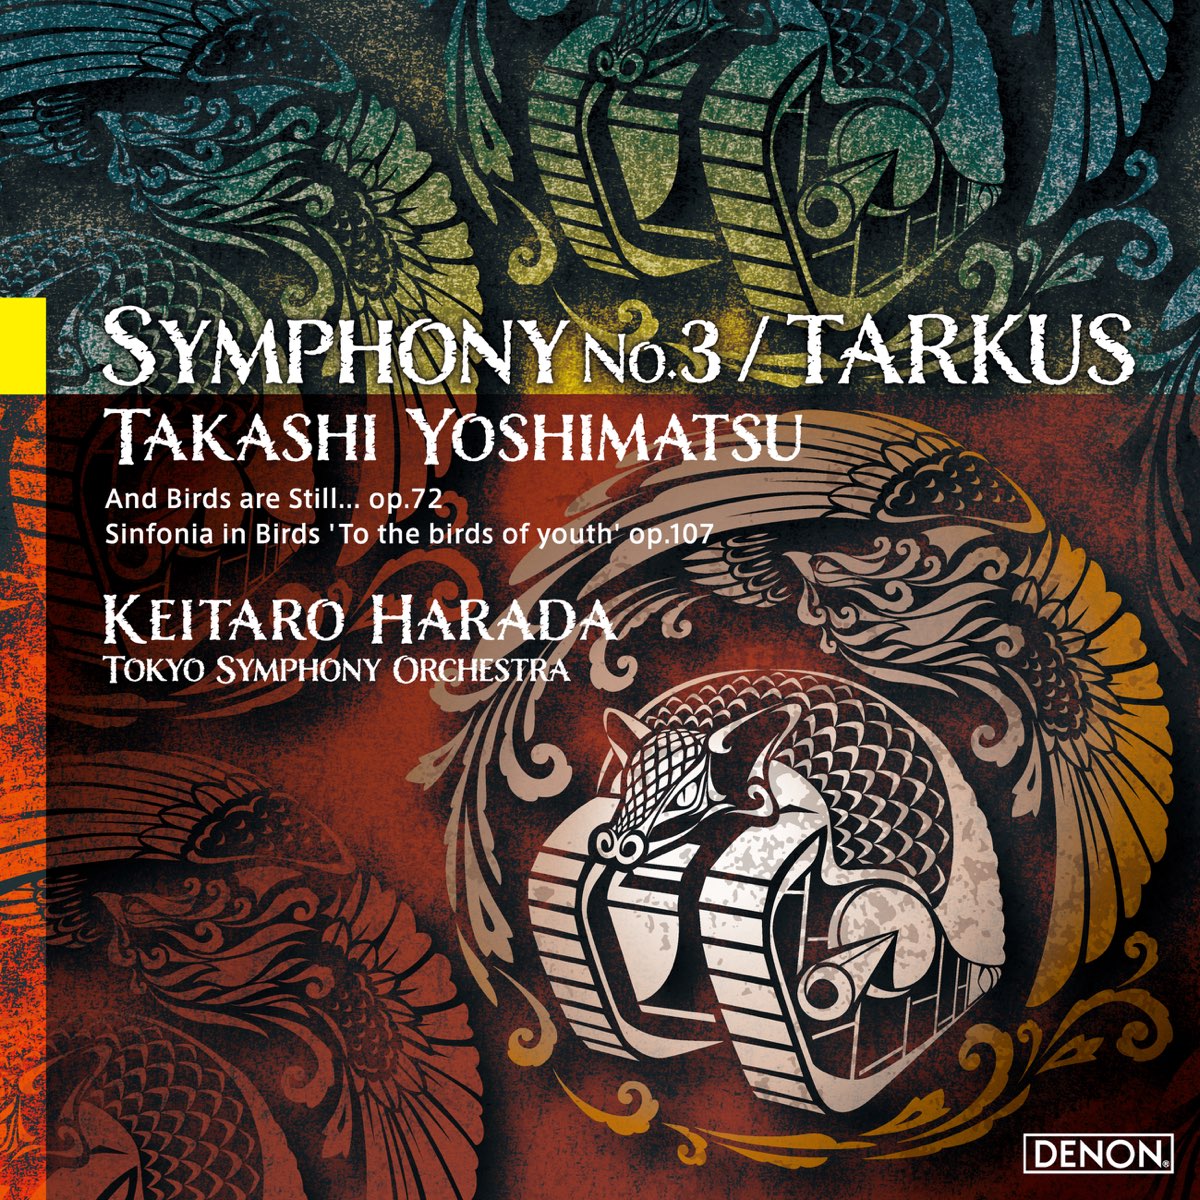 Takashi Yoshimatsu: Symphony No. 3 / Tarkus - Album by Keitaro 